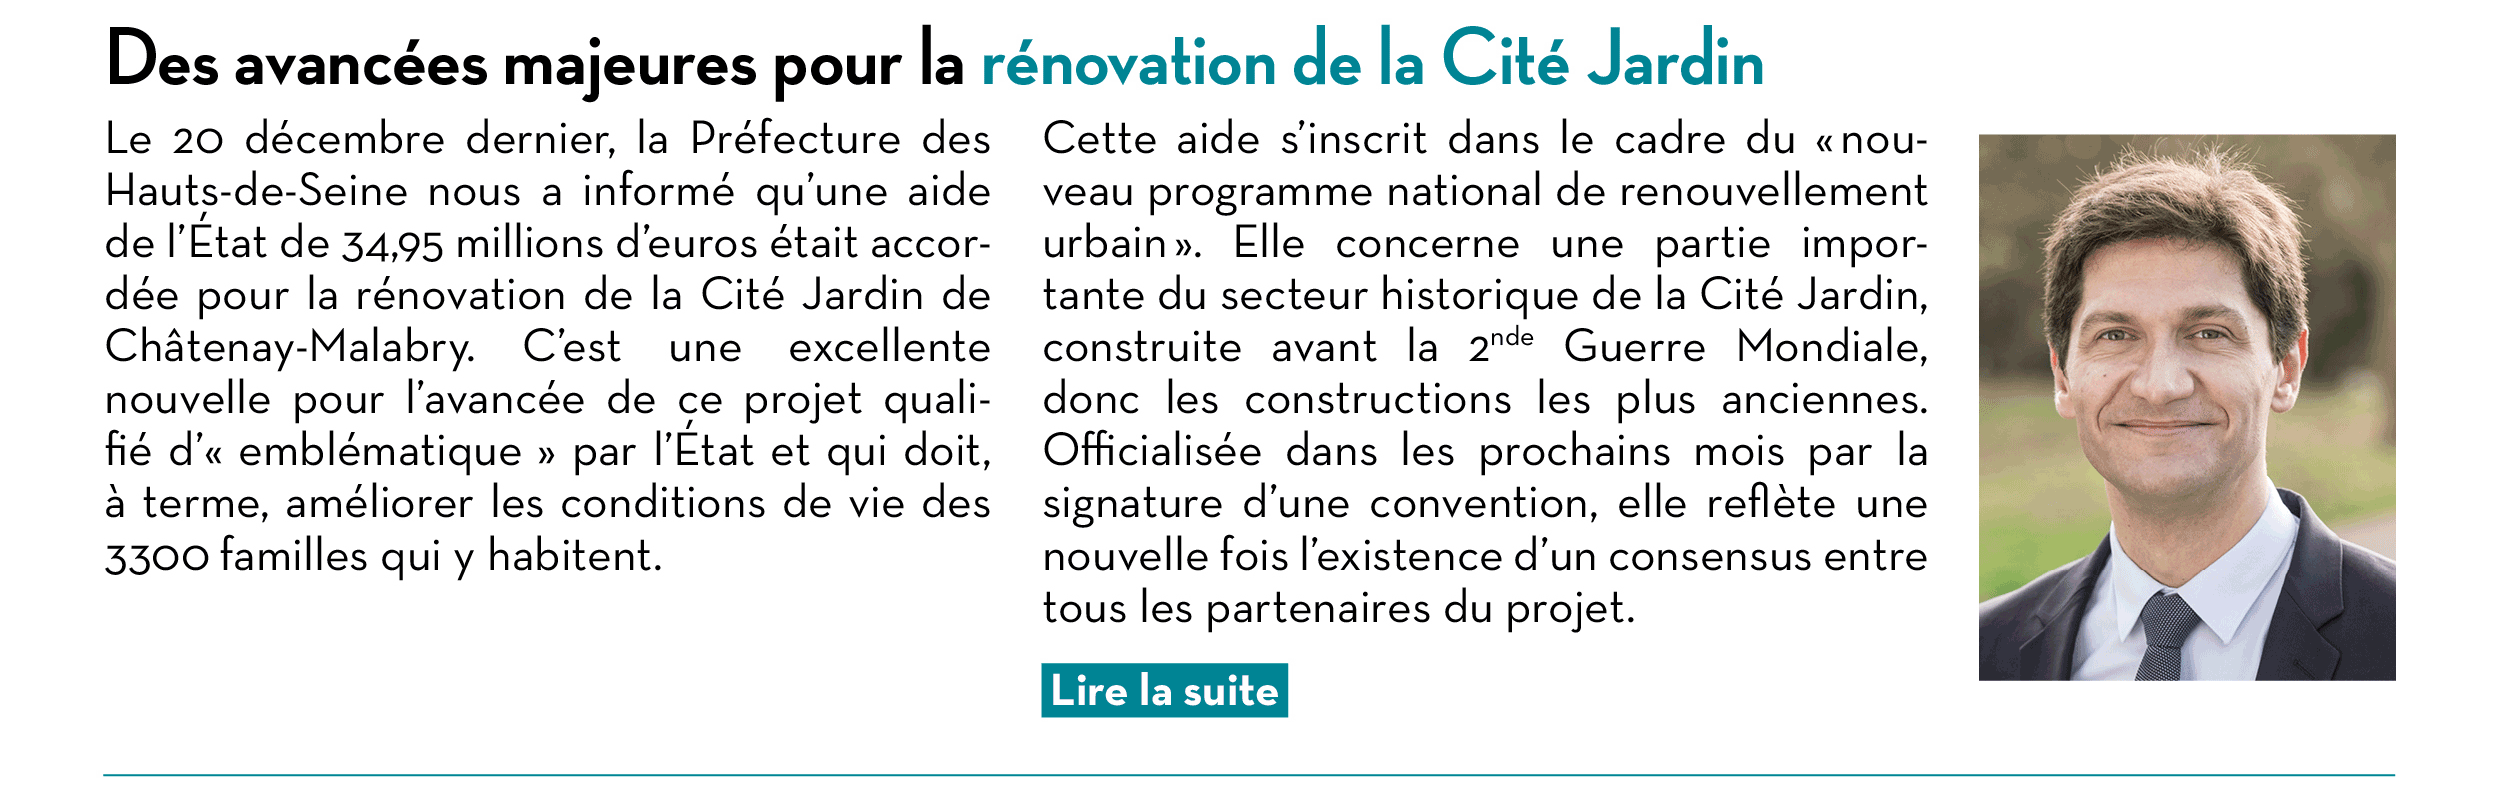 Des avancées majeures pour la rénovation de la Cité Jardin